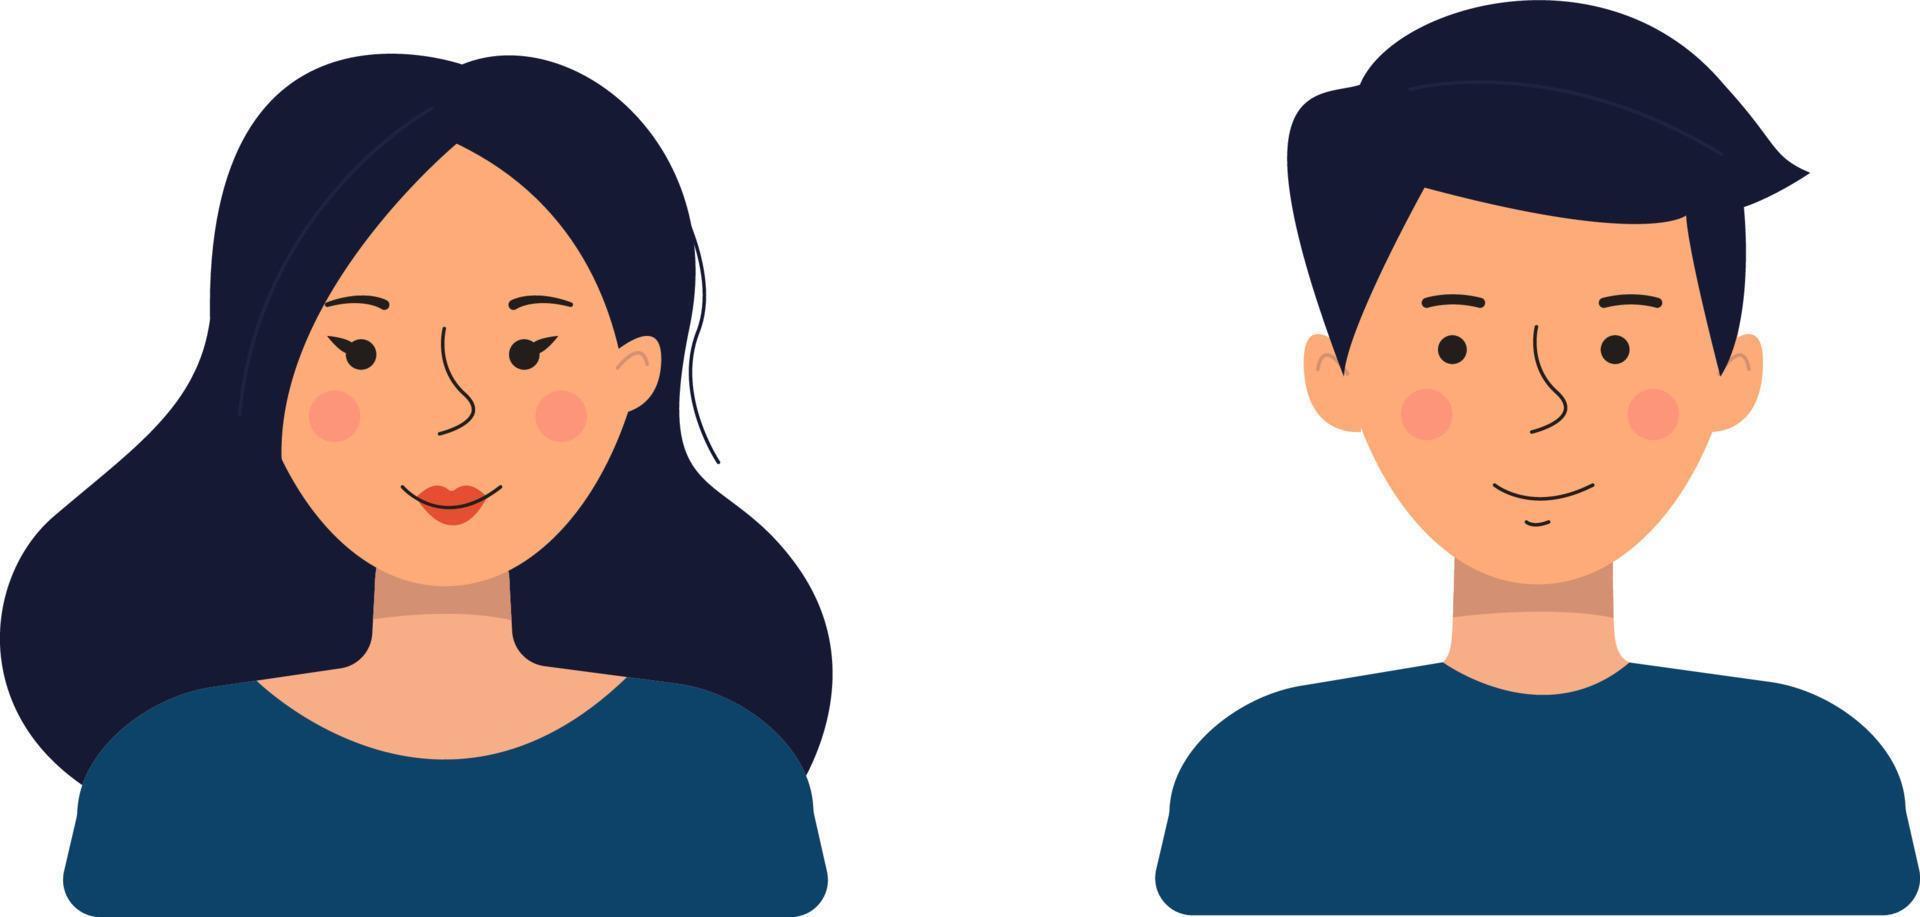 avatars de personnes dans un style plat. illustration vectorielle d'un homme et d'une femme isolés sur fond blanc. vecteur